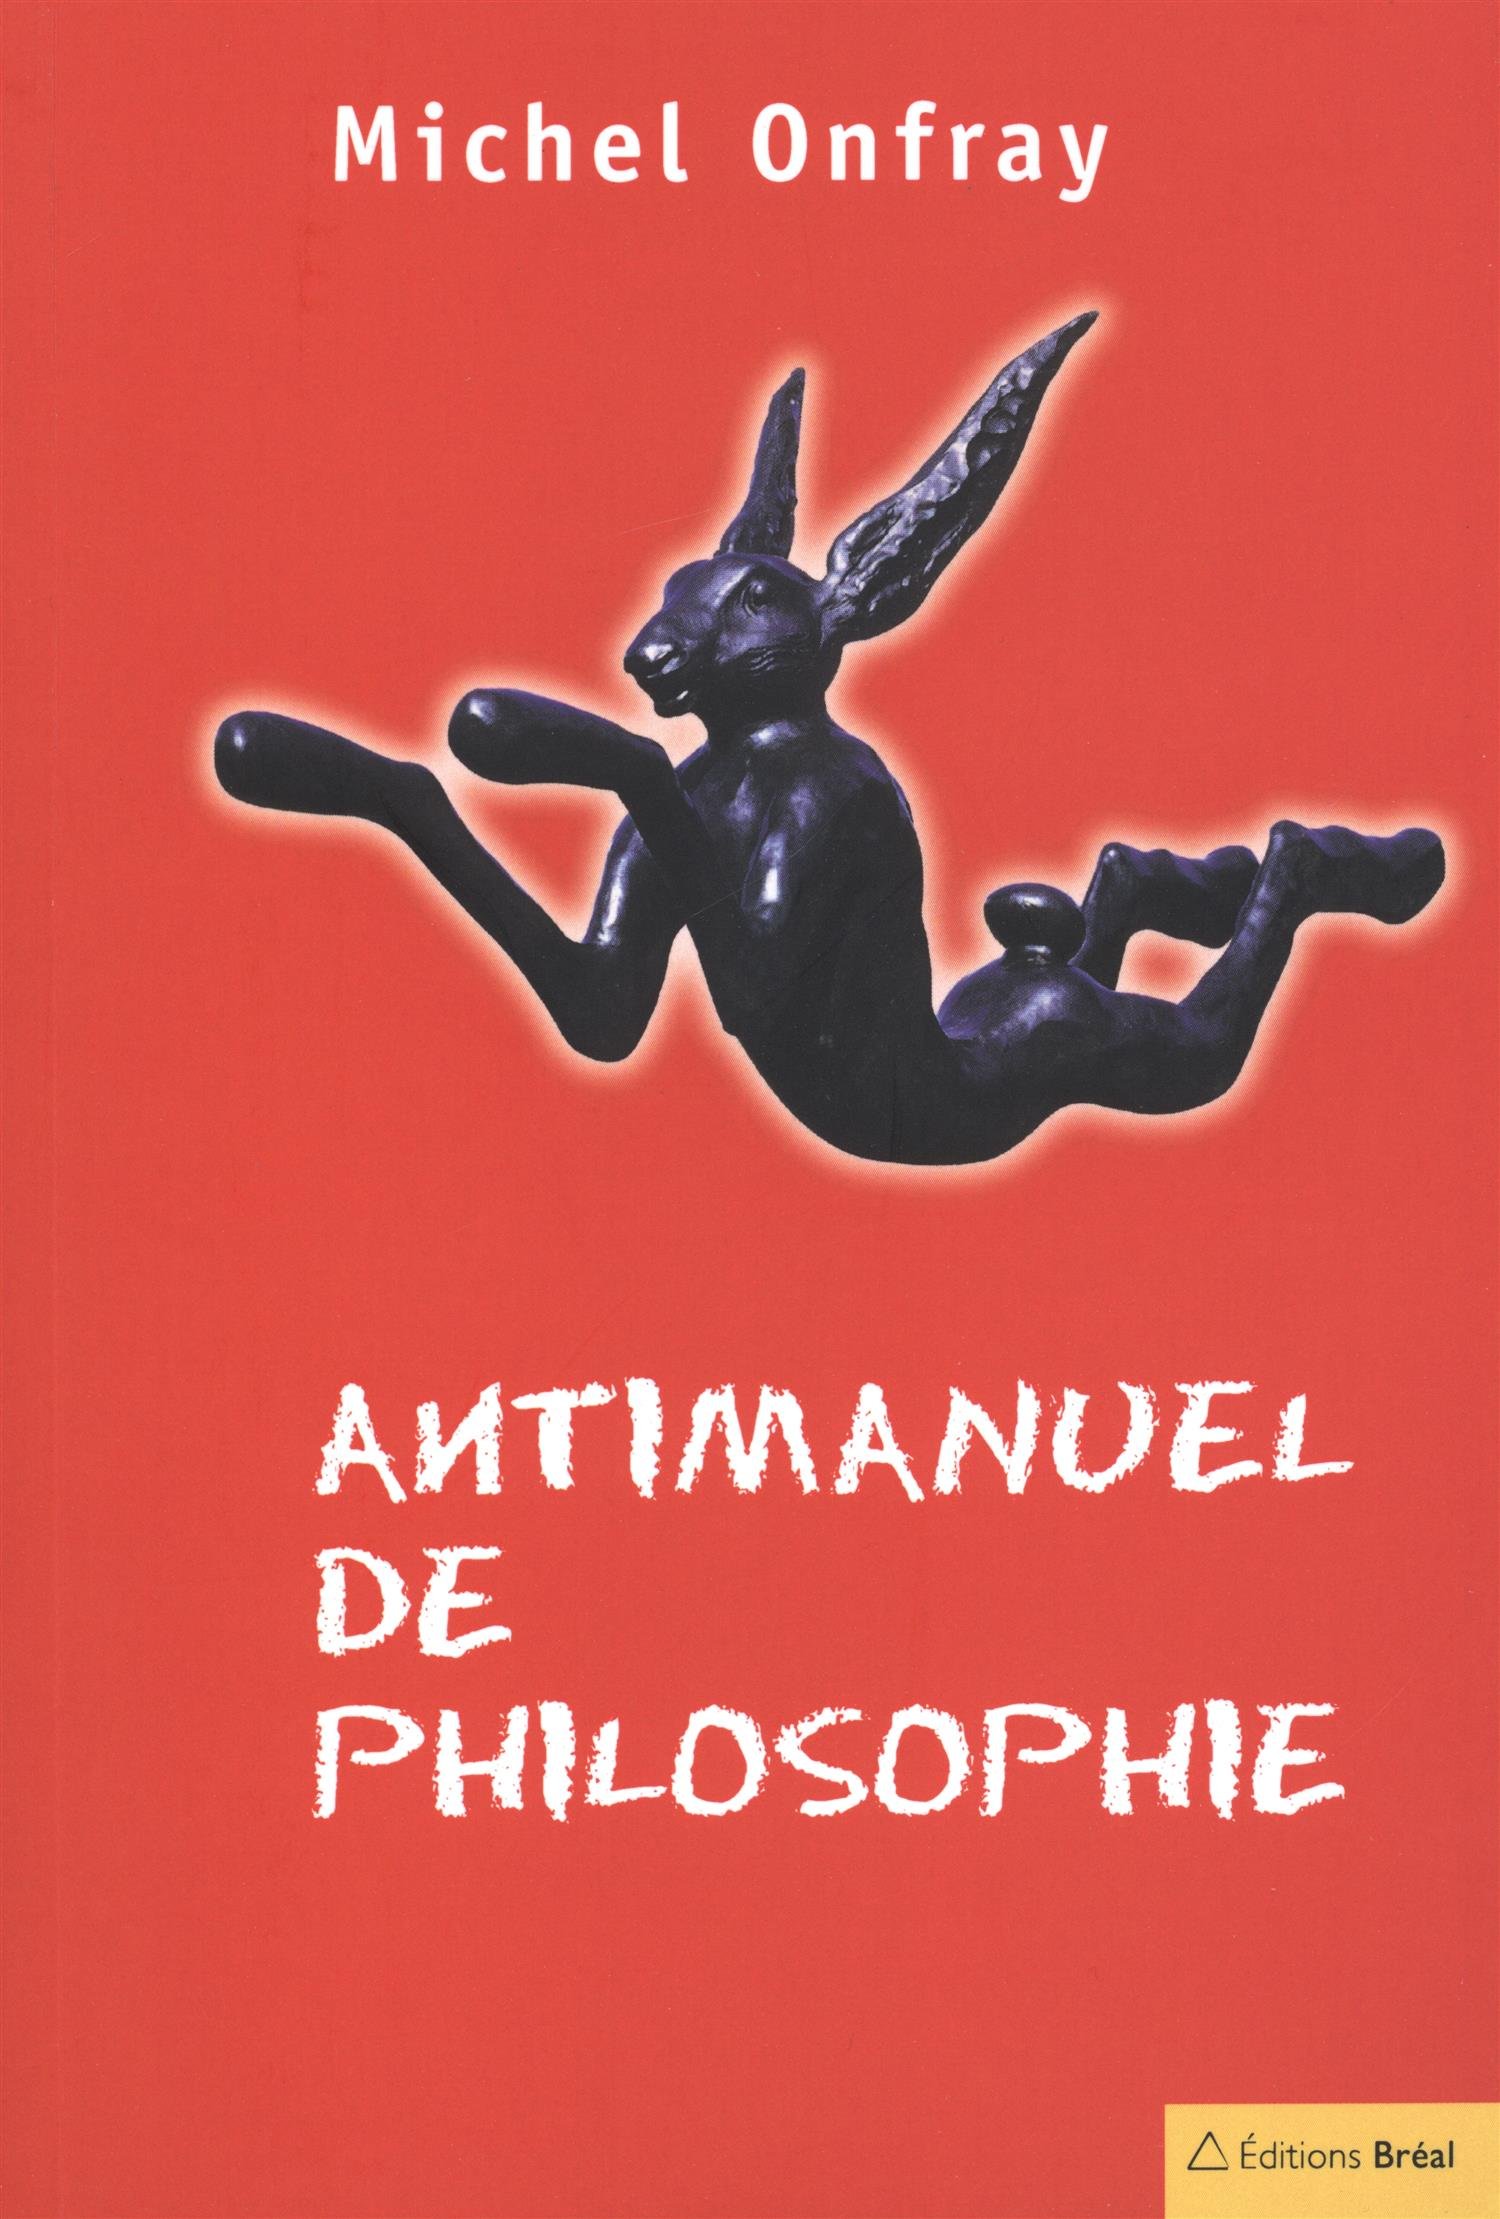 Anti-manuel de philosophie (Michel Onfray)